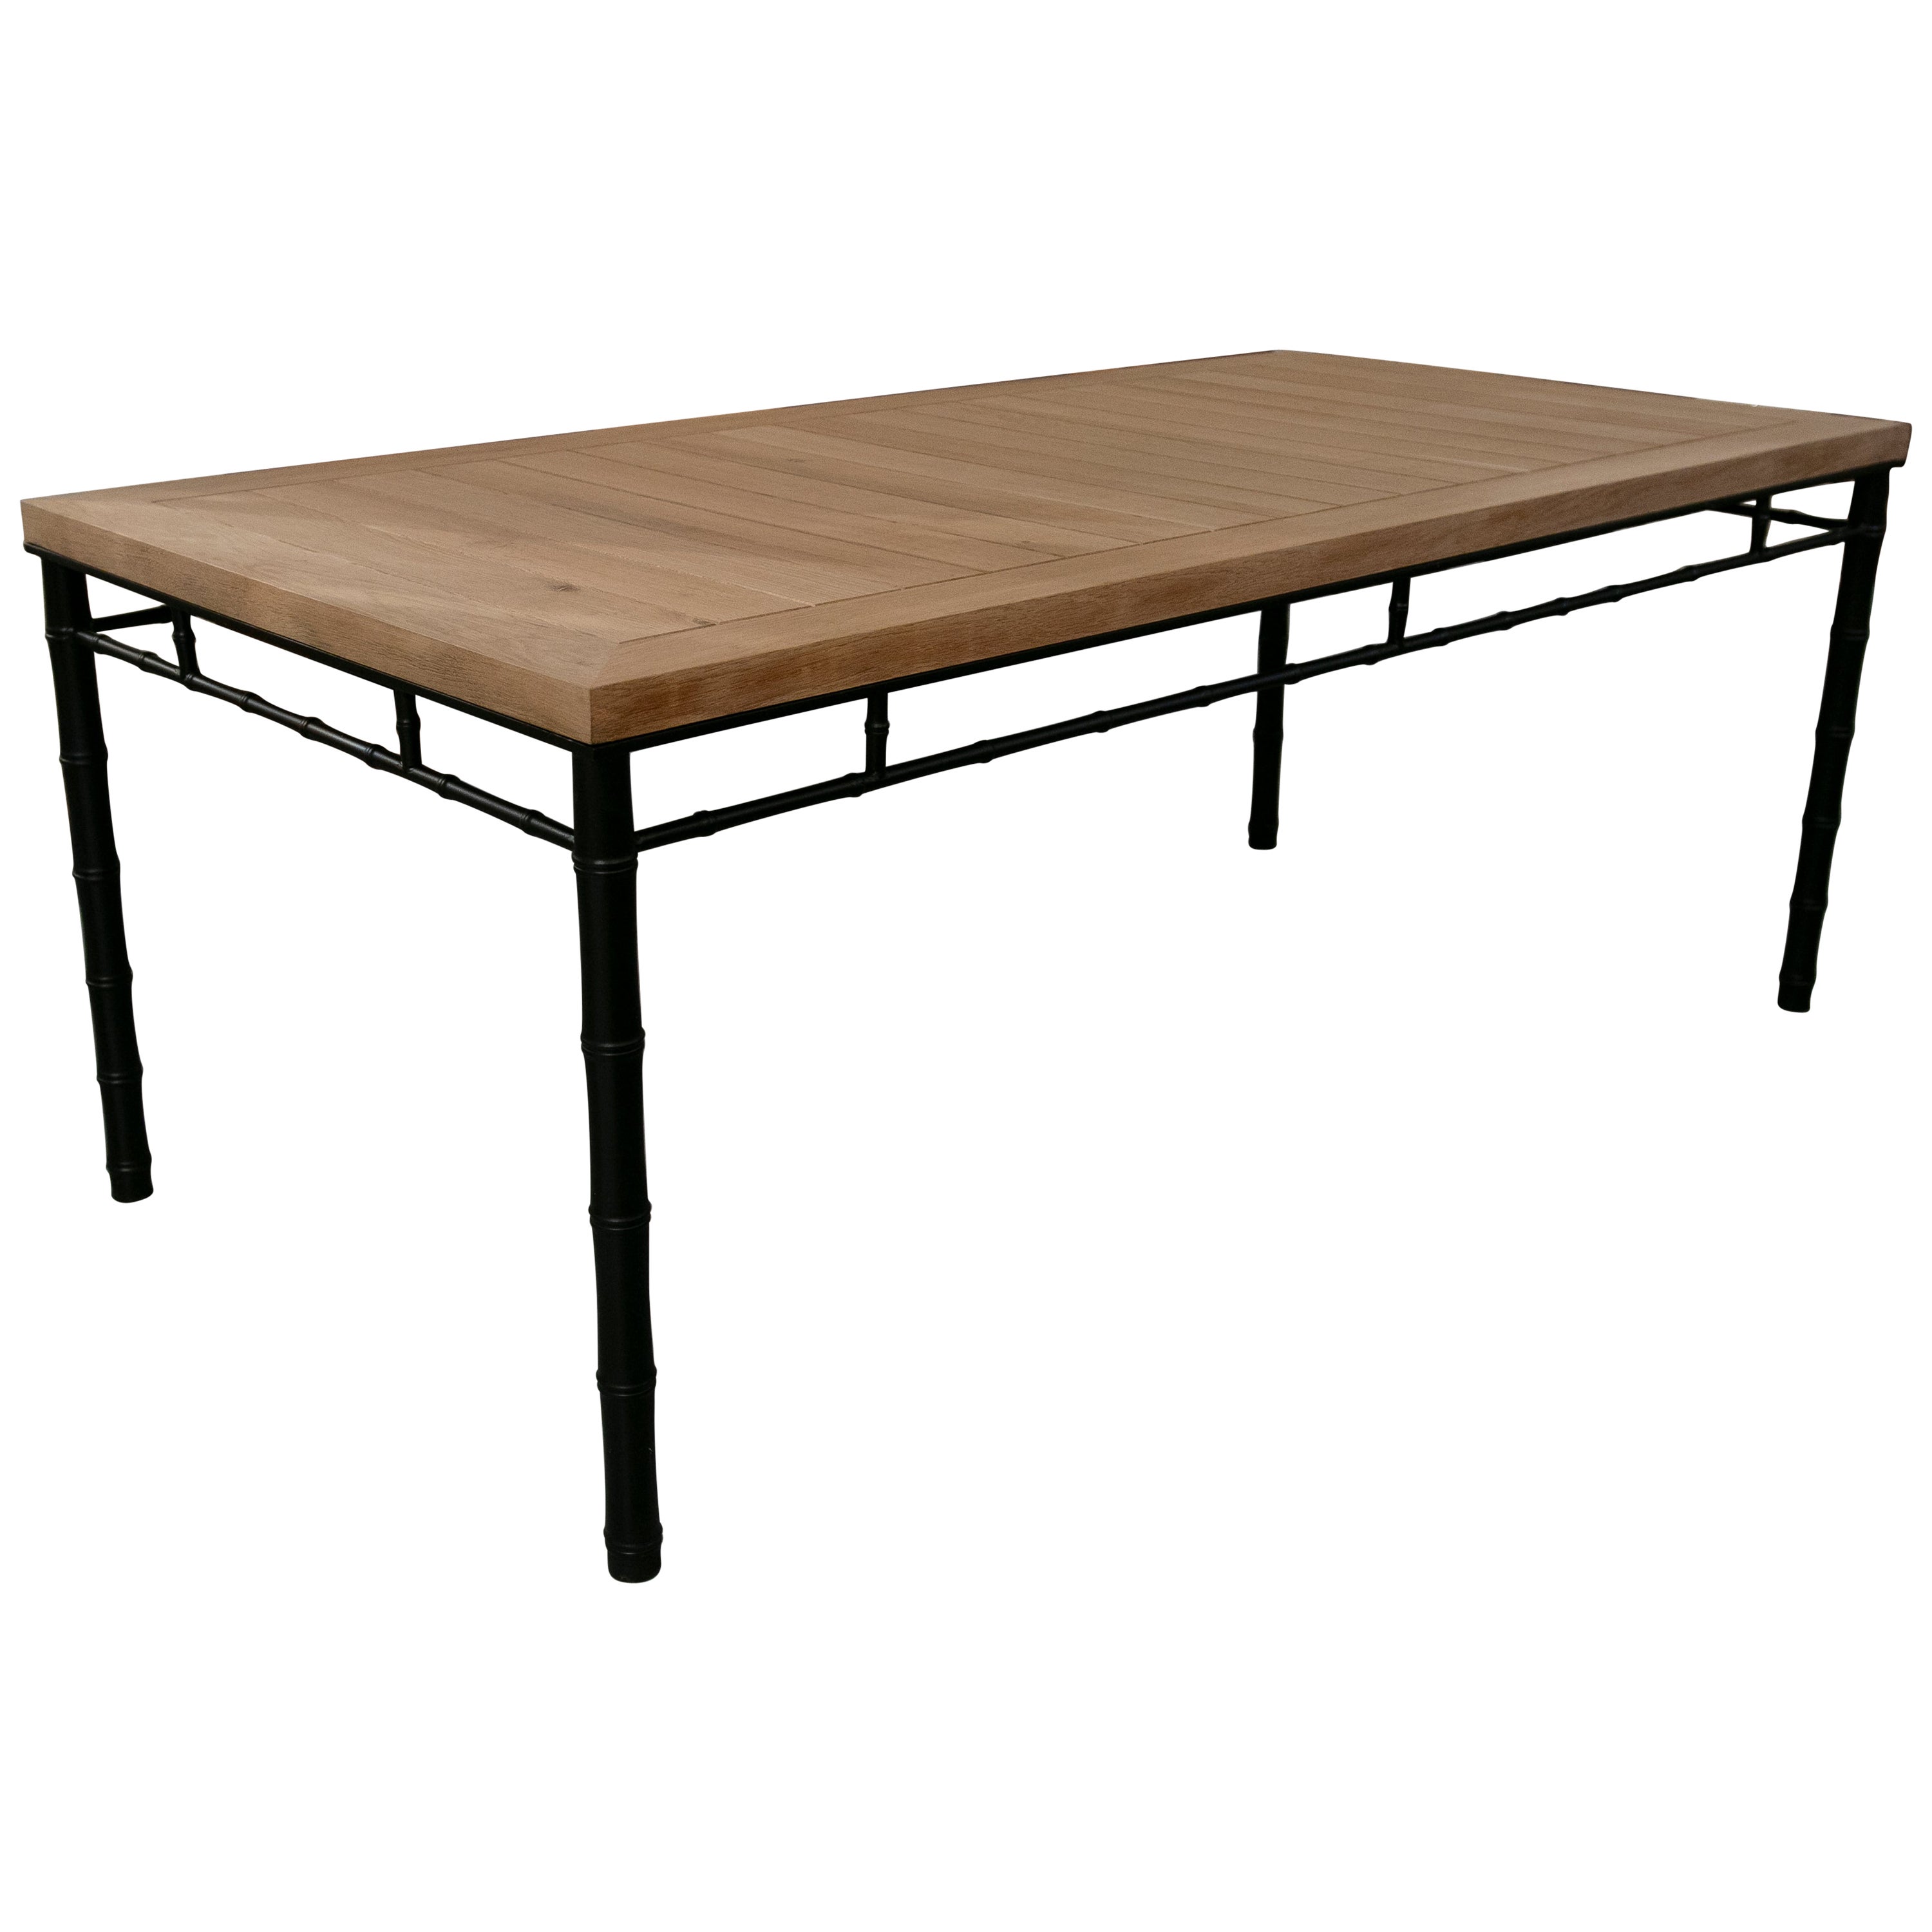 Table avec base en fer imitant le bambou et plateau en bois dans sa couleur originale.